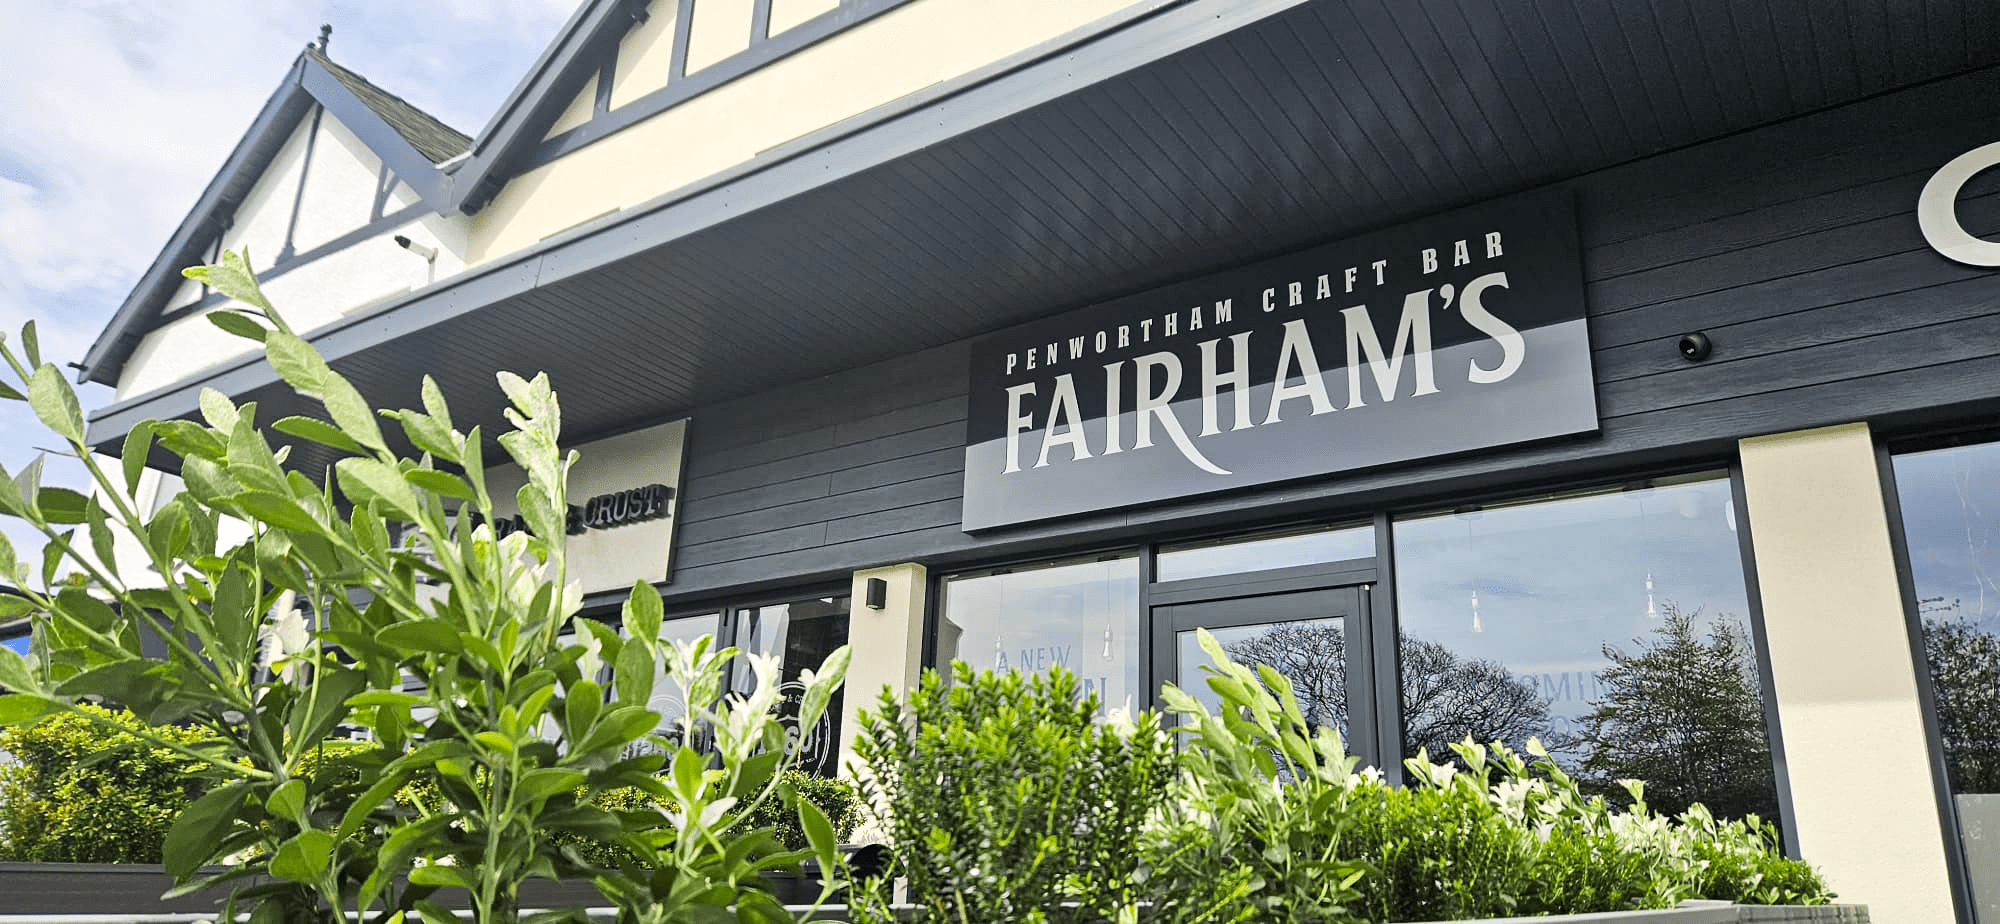 Fairham's Penwortham Bar Best Place To Drink Craft Bar Lancashire